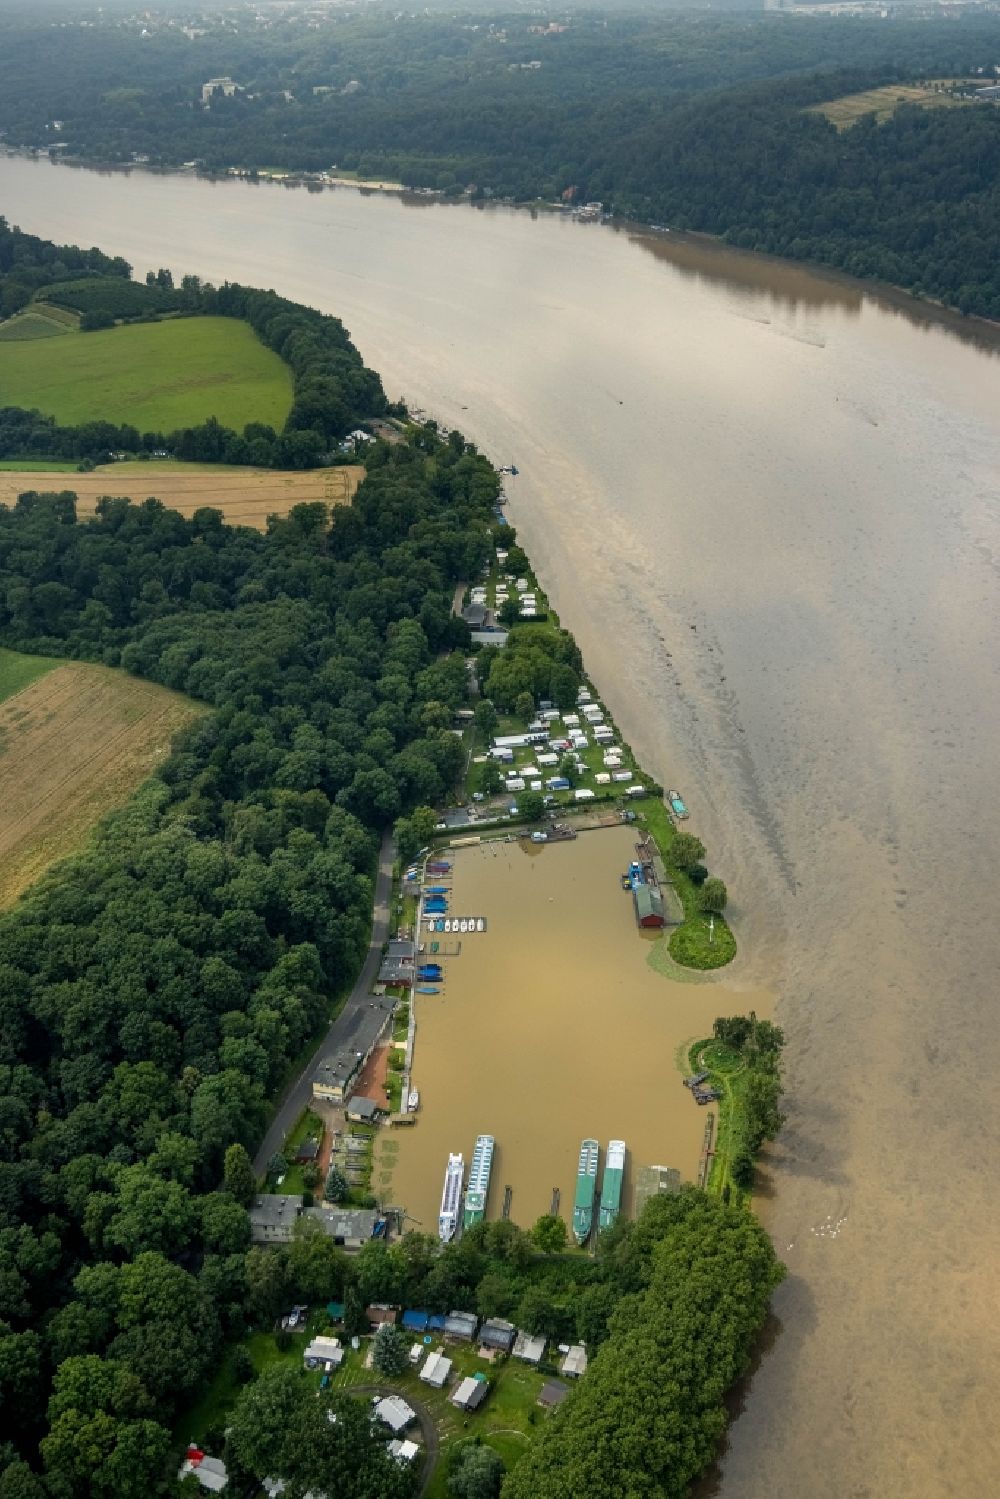 Luftbild Essen - Hochwasserschäden Ölspur auf der Wasseroberfläche des Baldeneysee in Essen im Bundesland Nordrhein-Westfalen, Deutschland